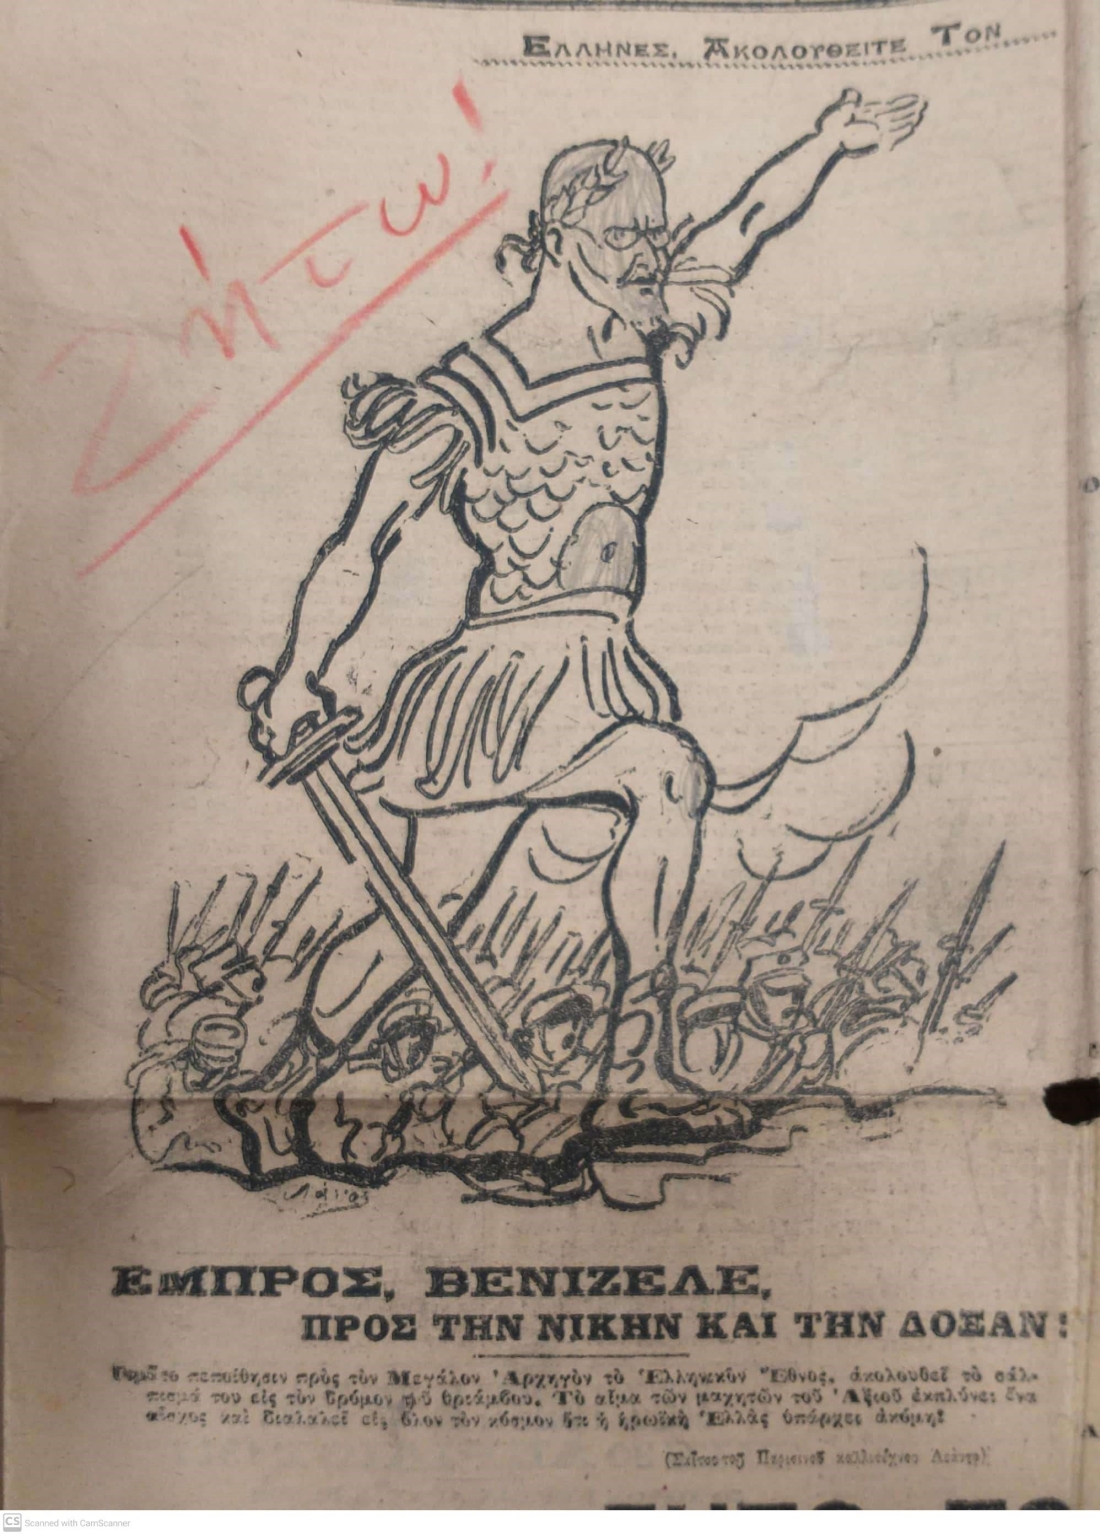 Απόκομμα από την εφημερίδα Πατρίς, 27/3/1917, που ο νεαρός Γιώργος Σεφέρης κράτησε, προφανώς εμπνευσμένος από το θέμα, ίσως και από την τεχνοτροπία, την Ελευθερία που οδηγεί τον λαό του Ντελακρουά και εν προκειμένω προσωποποιείται από τον Ελευθέριο Βενιζέλο. Το καρικατουρίστικο σχέδιο είχε γίνει από τον Charles Leandre, με σινική μελάνη.  